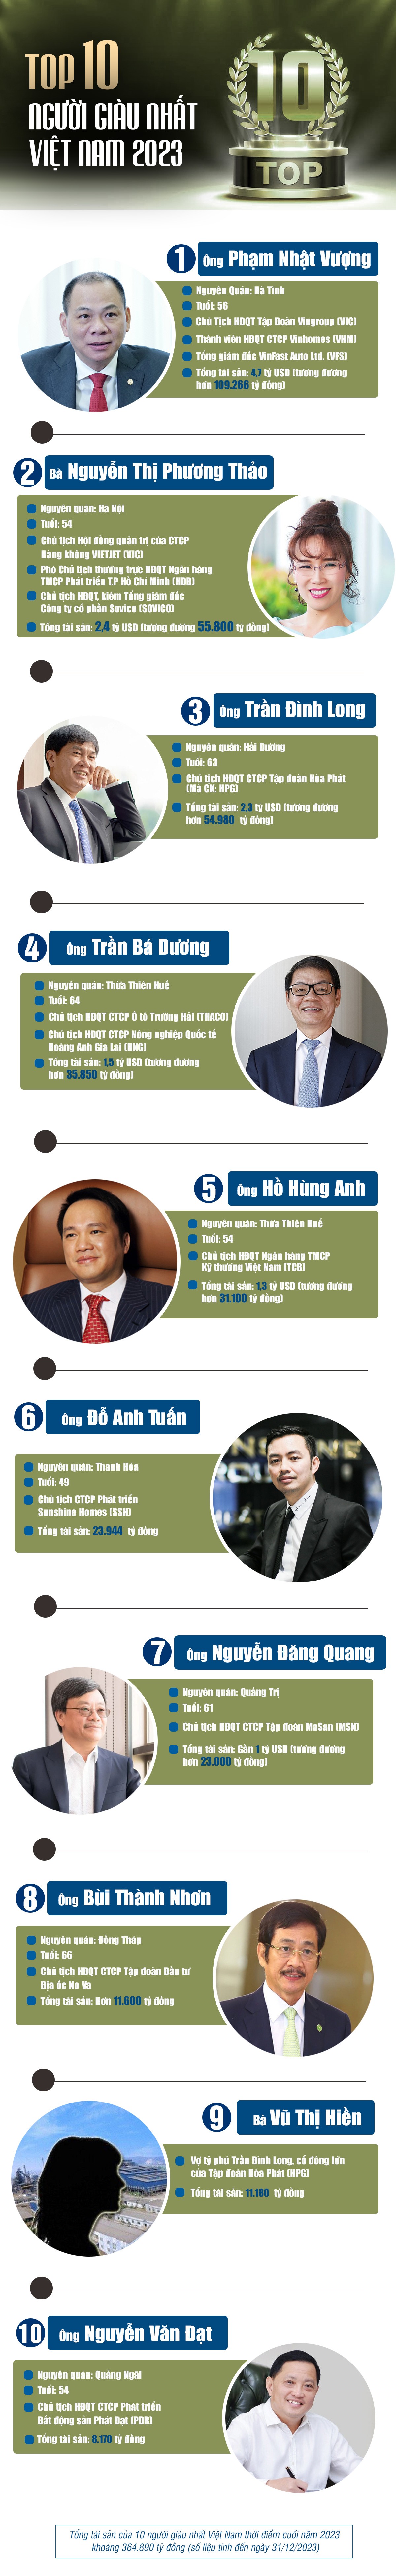 10 người giàu nhất Việt Nam trong năm 2023 sở hữu bao nhiêu tiền? - 1